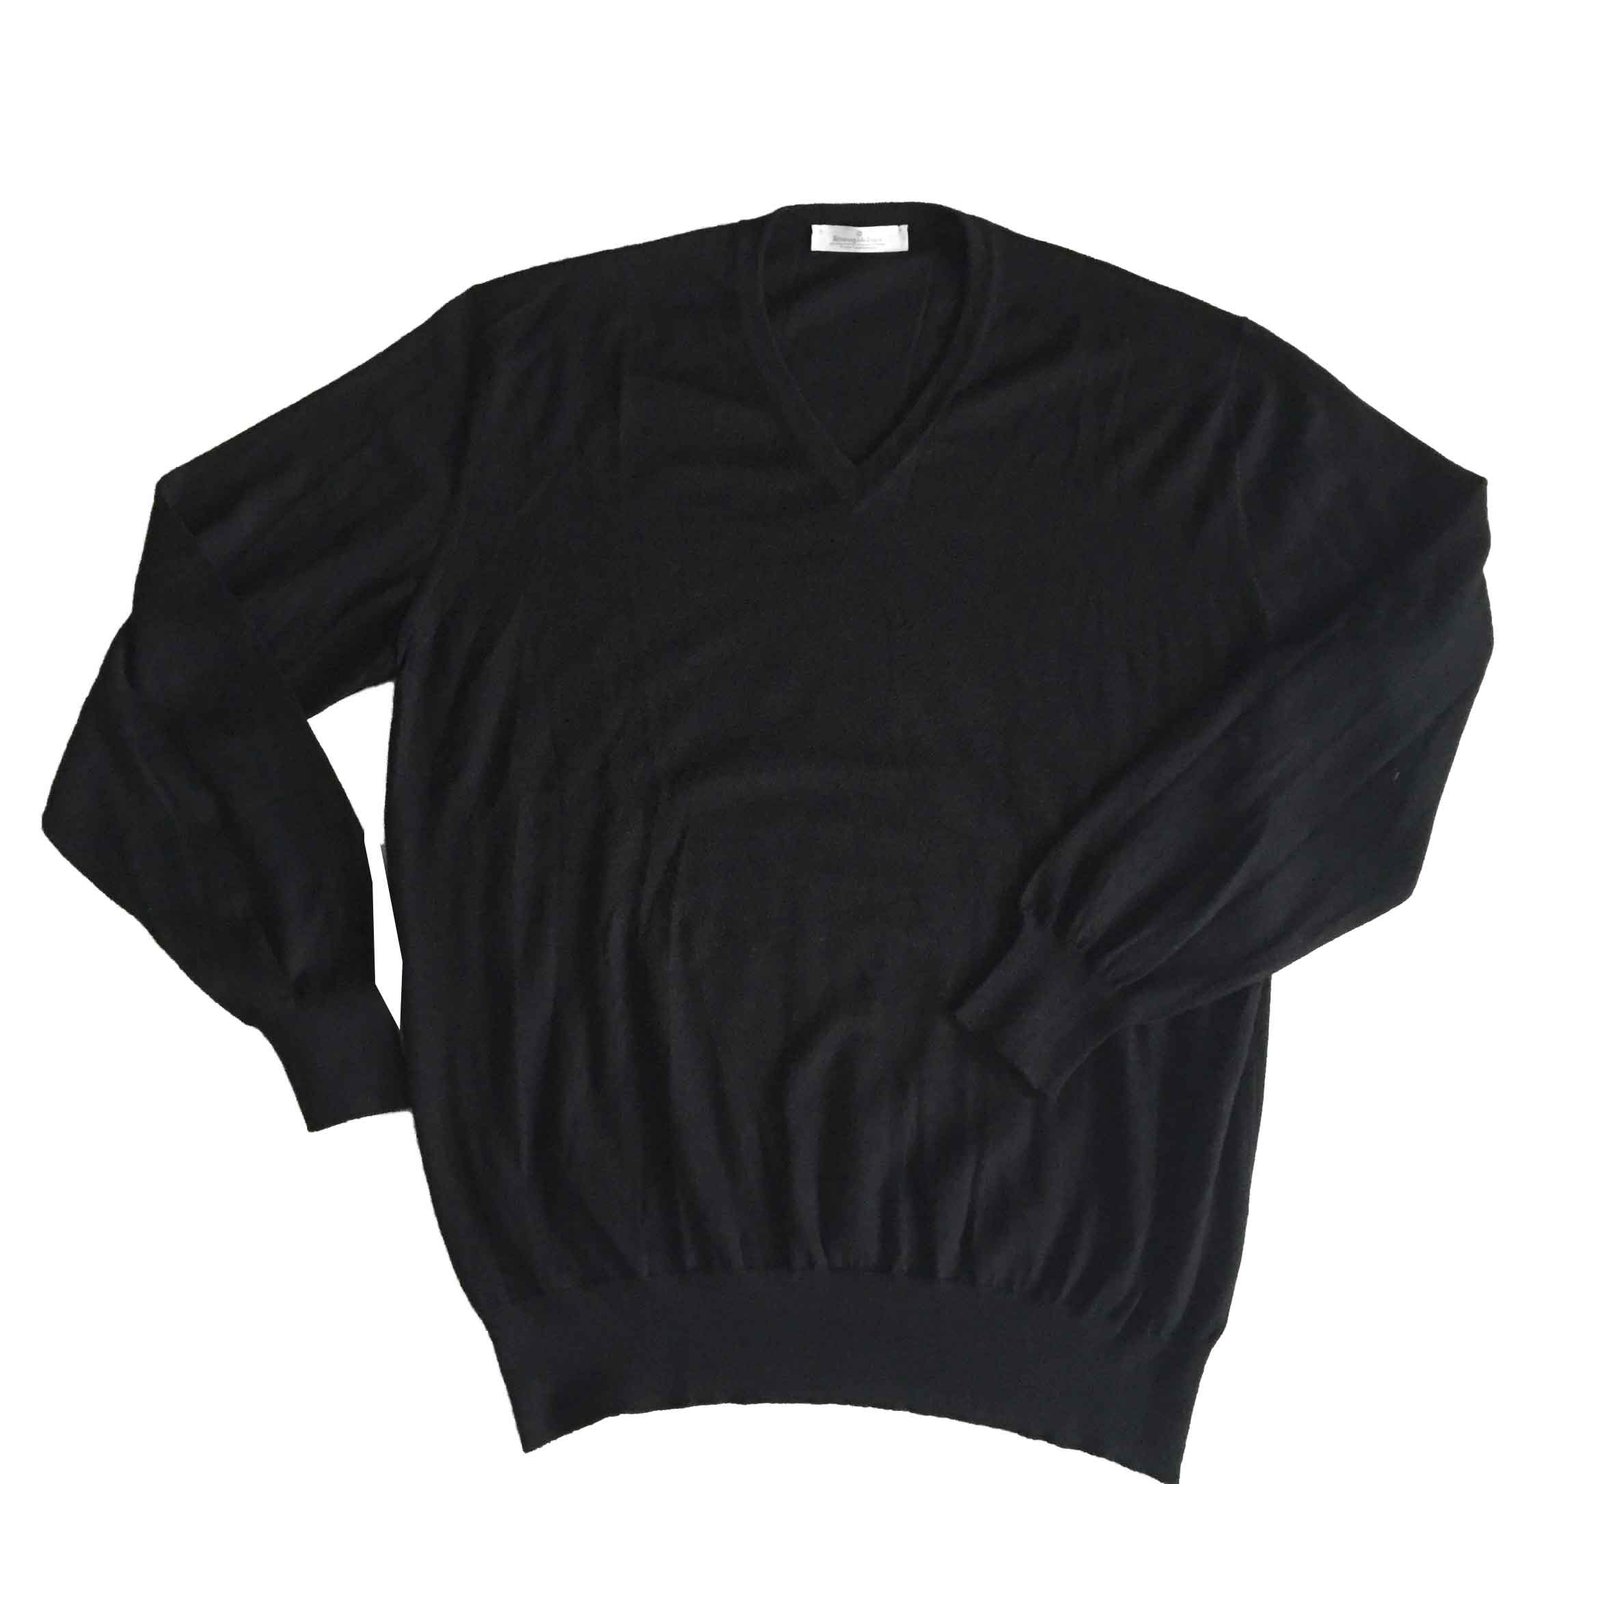 ERMENEGILDO ZEGNA Cashmere v-neck sweater in black TOP CONDITION!! Size ...